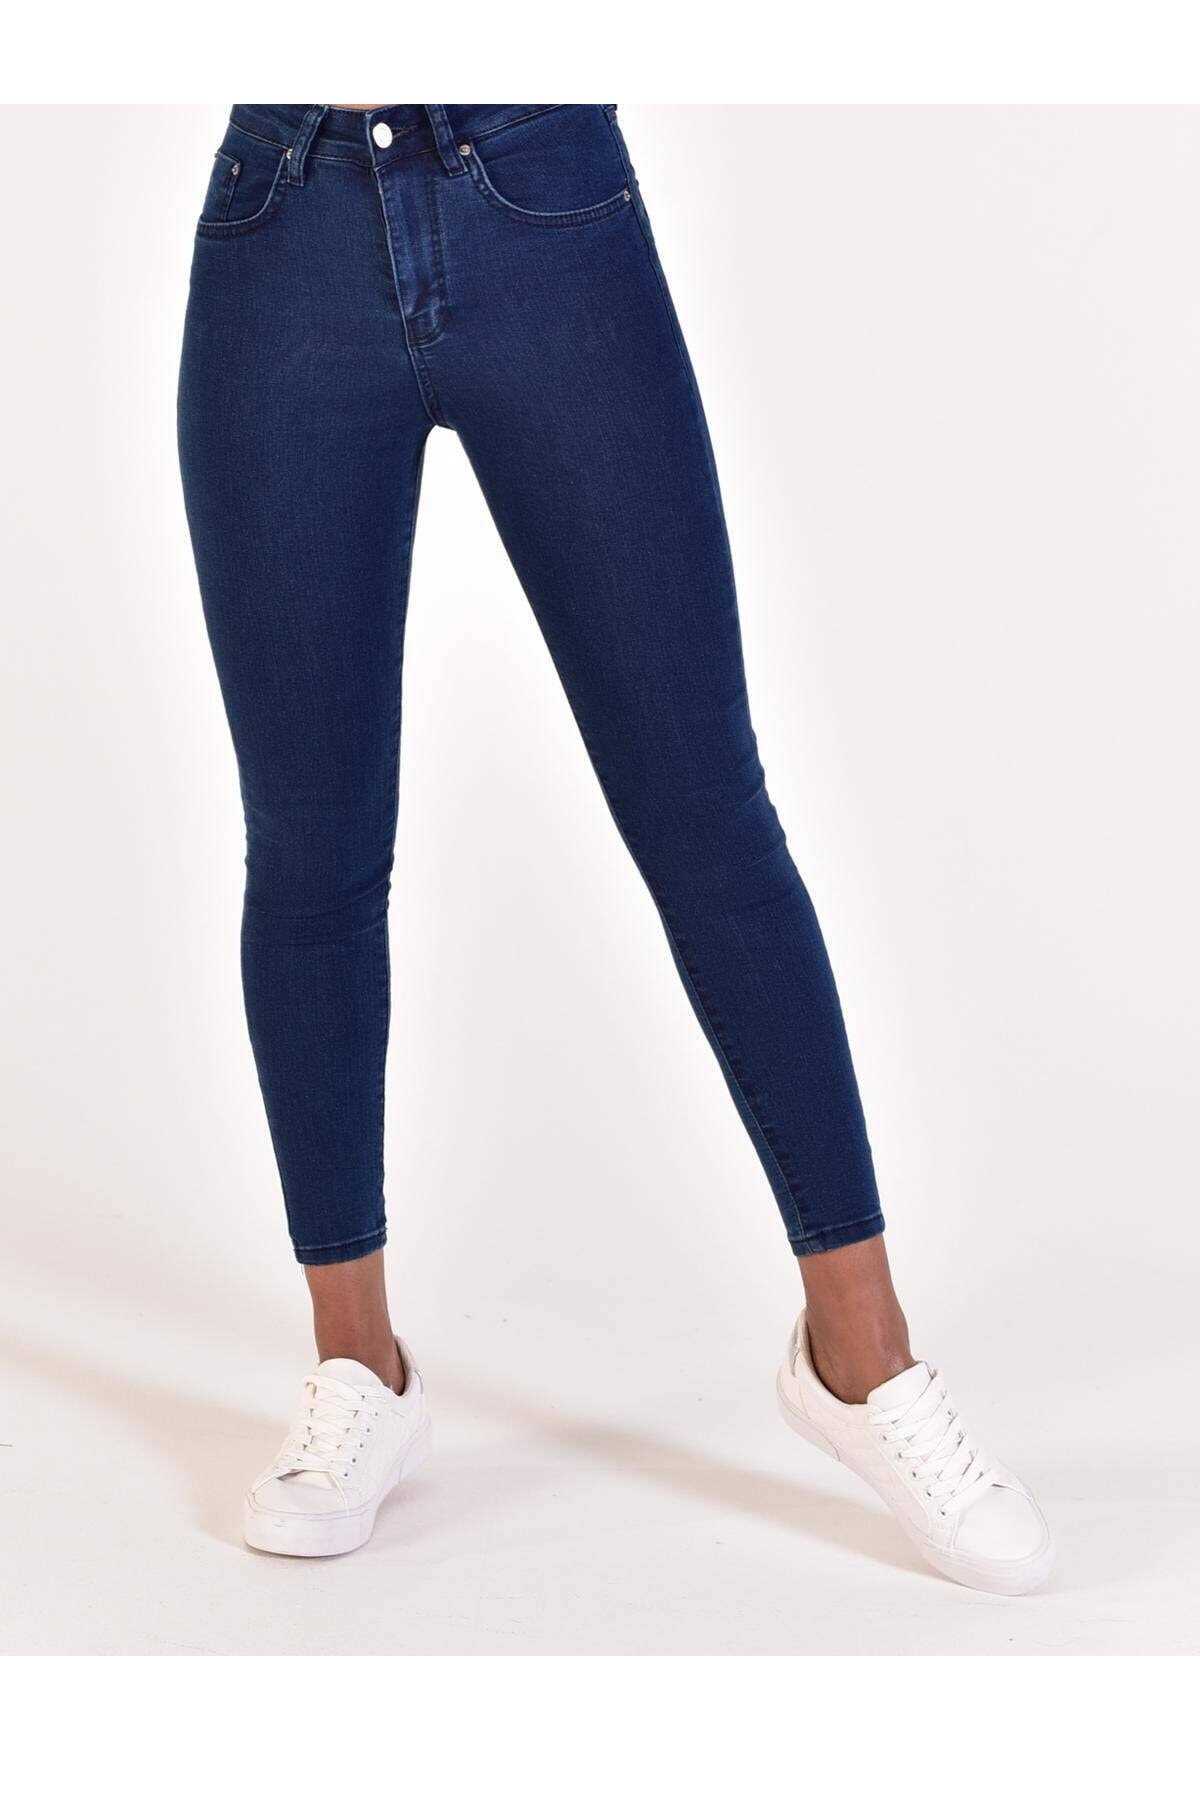 حرید اینترنتی شلوار جین زنانه ارزان برند Addax رنگ لاجوردی کد ty38212588